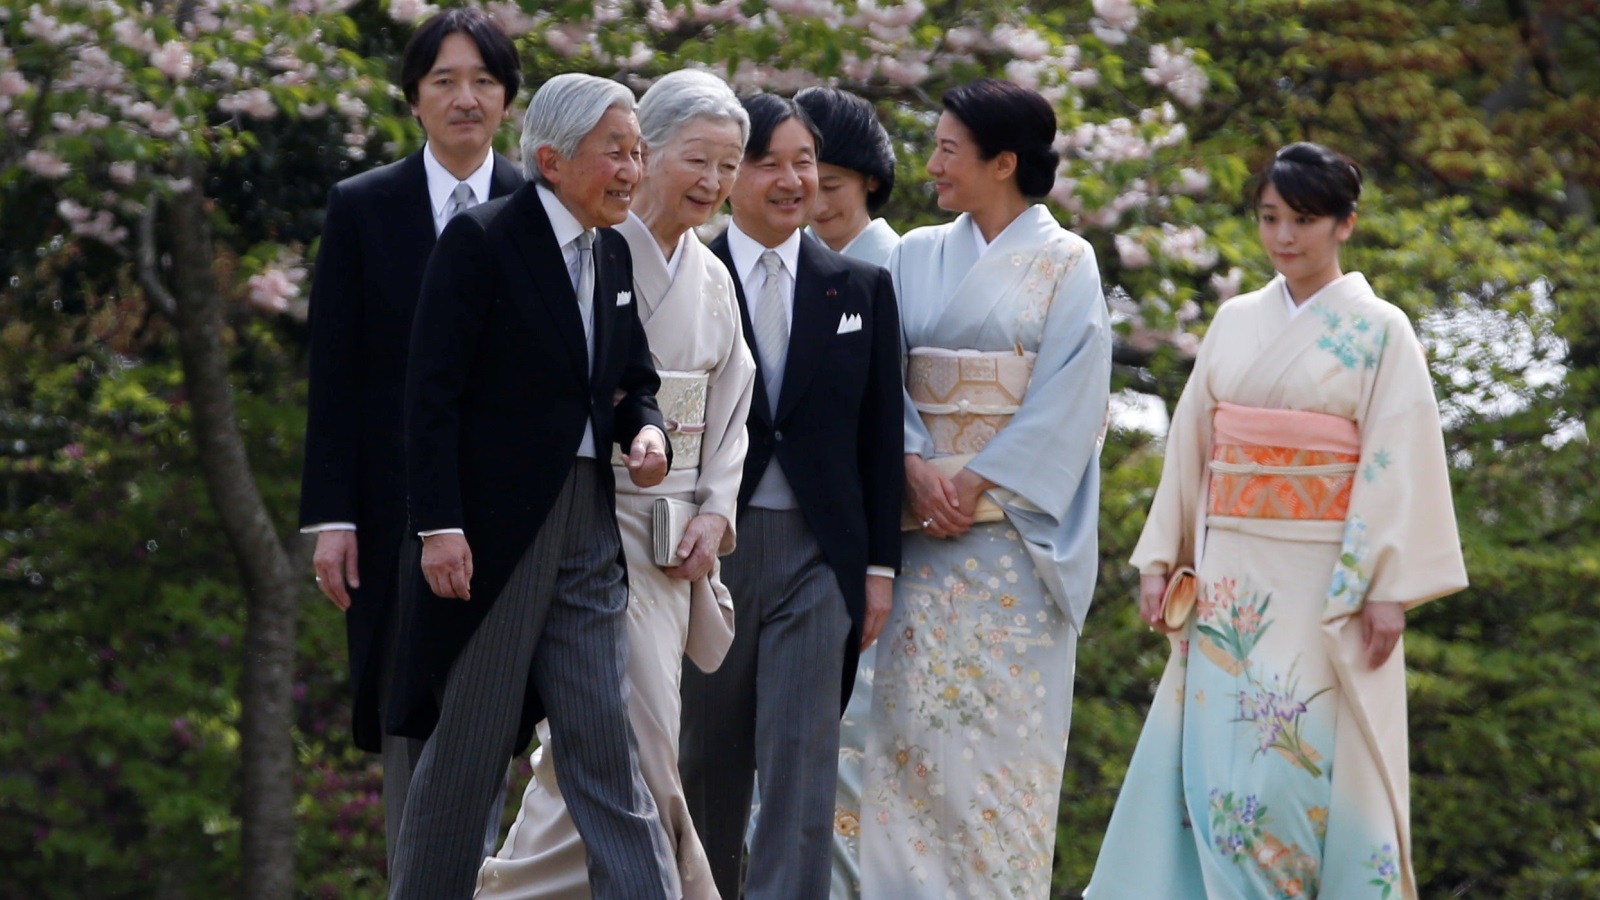 العائلة المالكة في اليابان يعود تاريخها في الحكم لـ2600 عام (رويترز)